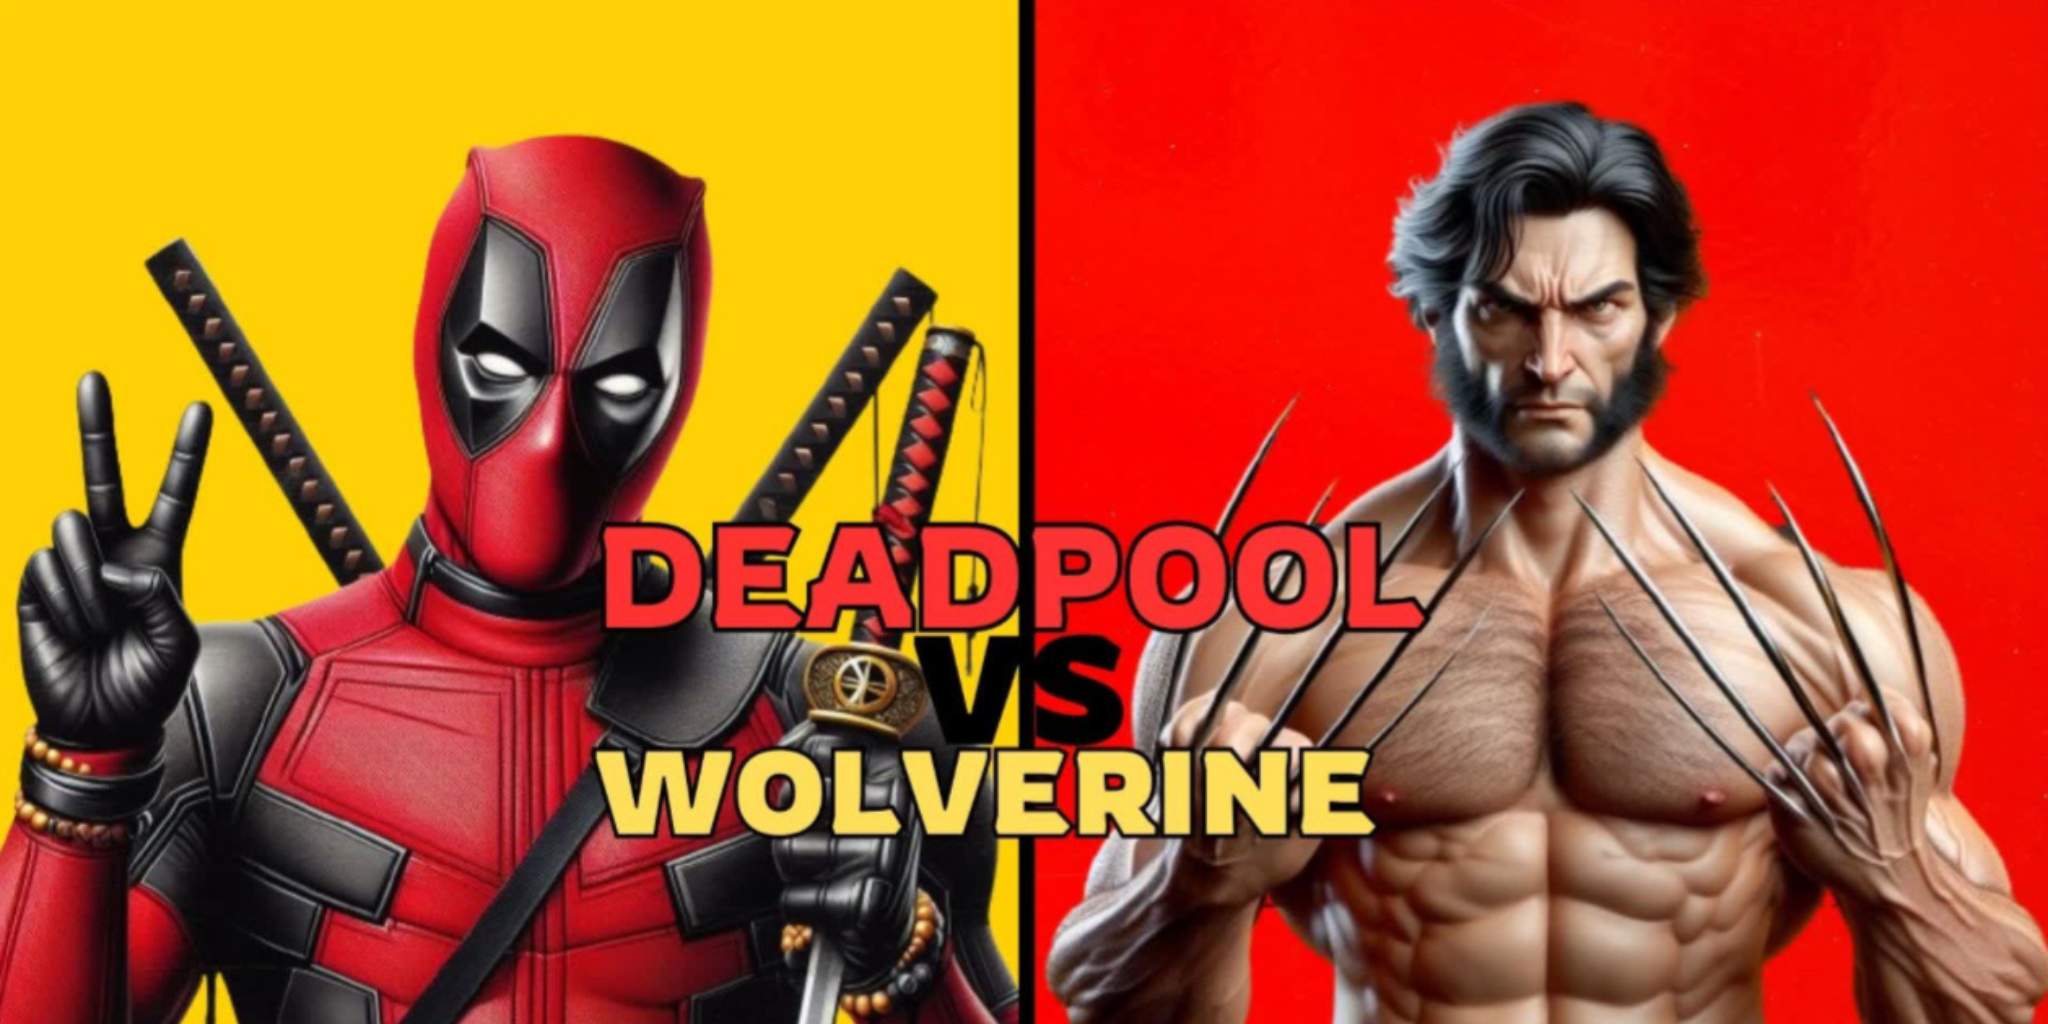 1v1 Deadpool vs Wolverine image 2